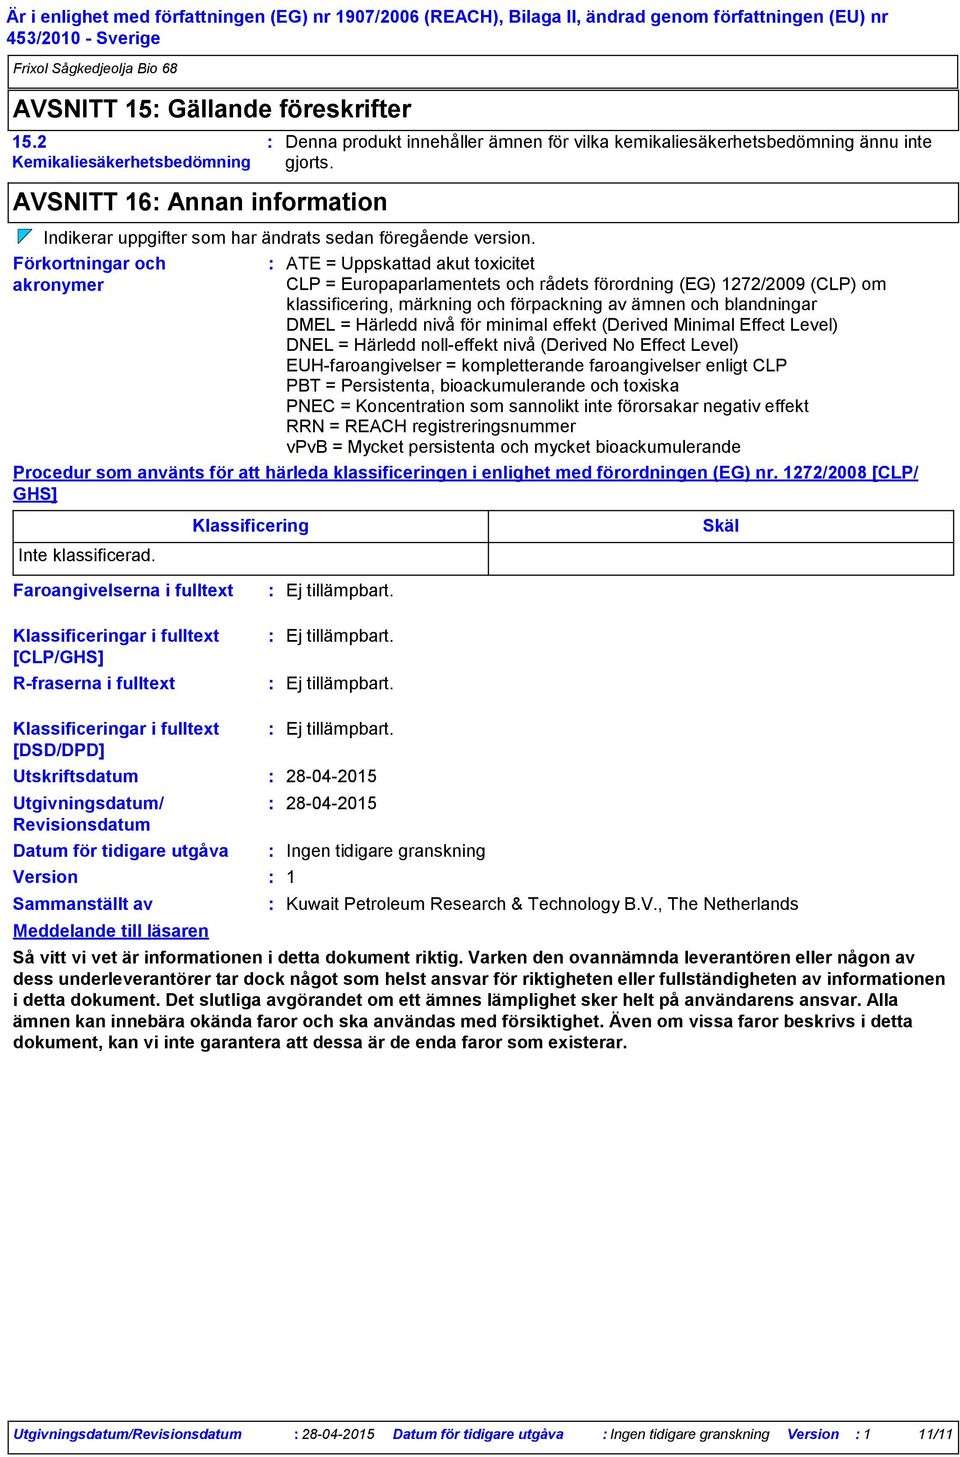 Förkortningar och akronymer ATE = Uppskattad akut toxicitet CLP = Europaparlamentets och rådets förordning (EG) 1272/2009 (CLP) om klassificering, märkning och förpackning av ämnen och blandningar